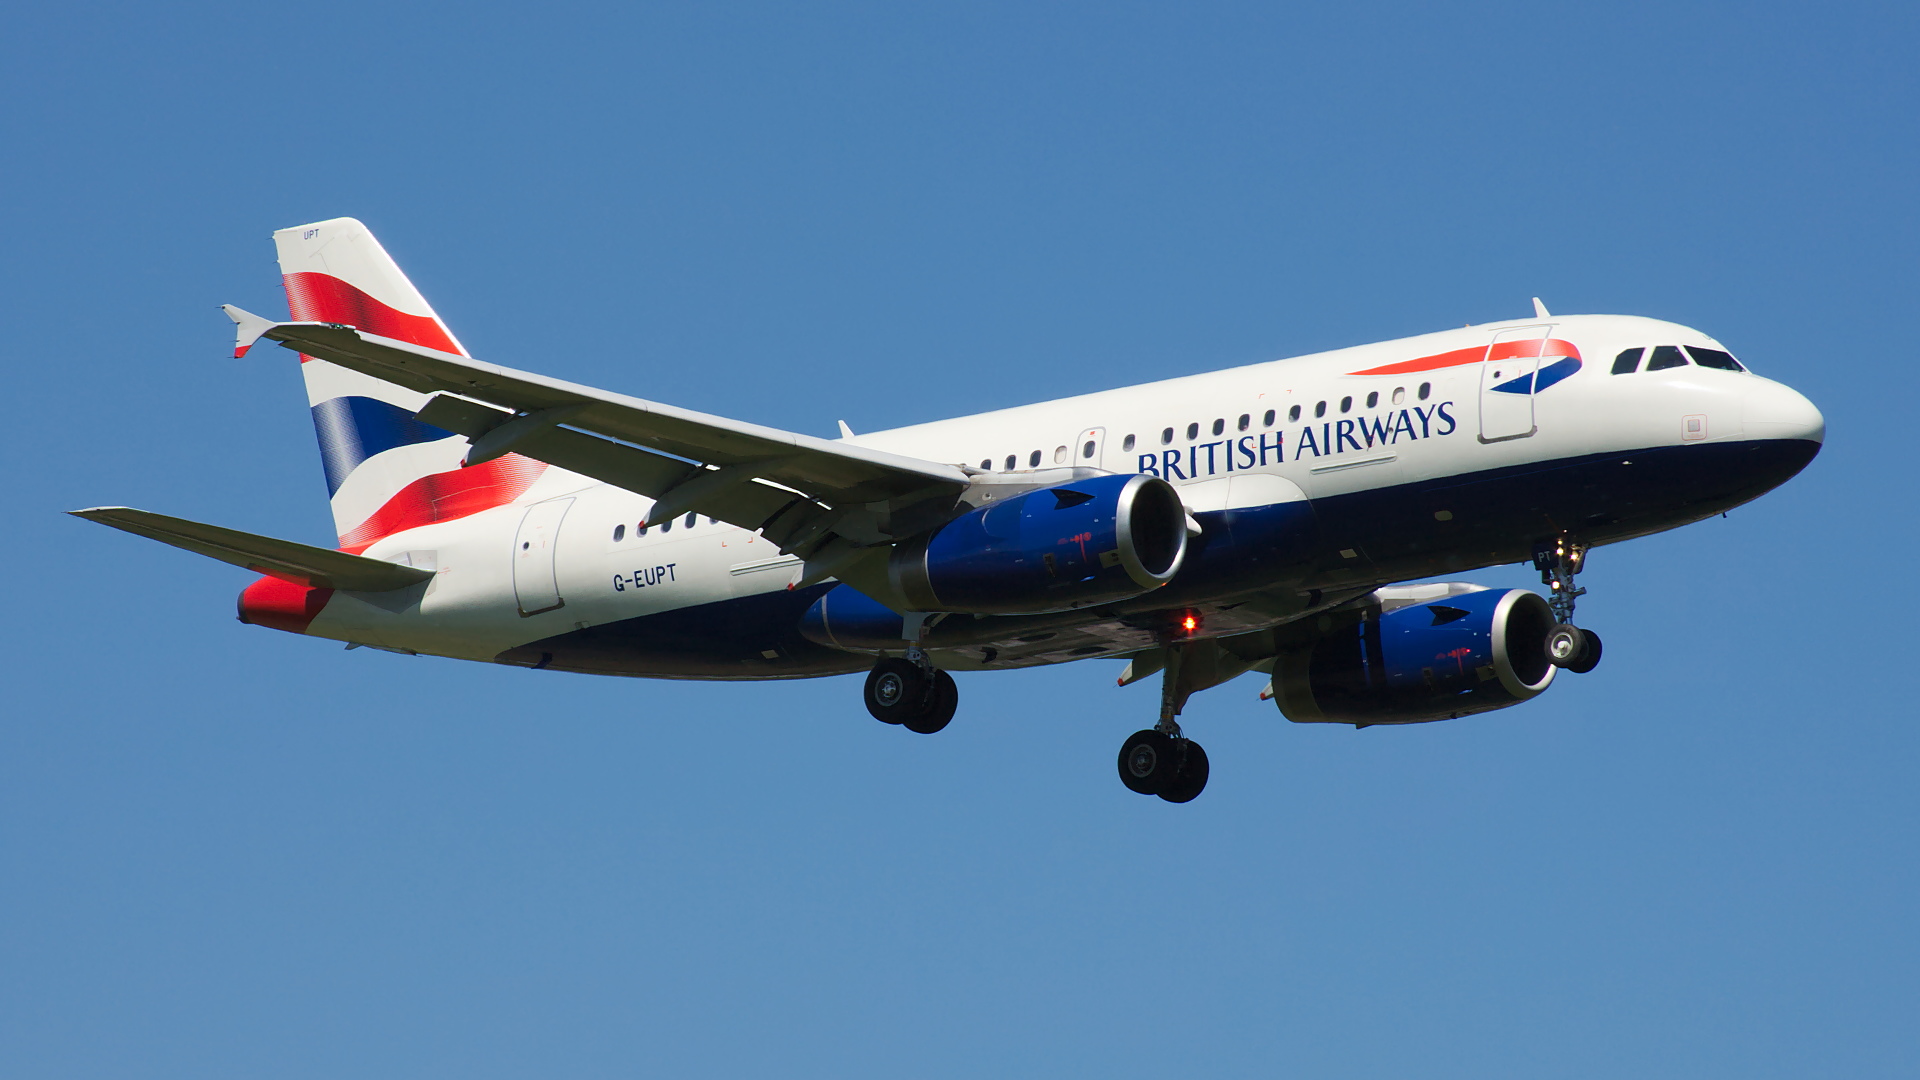 G-EUPT ✈ British Airways Airbus A319-131 @ London-Heathrow